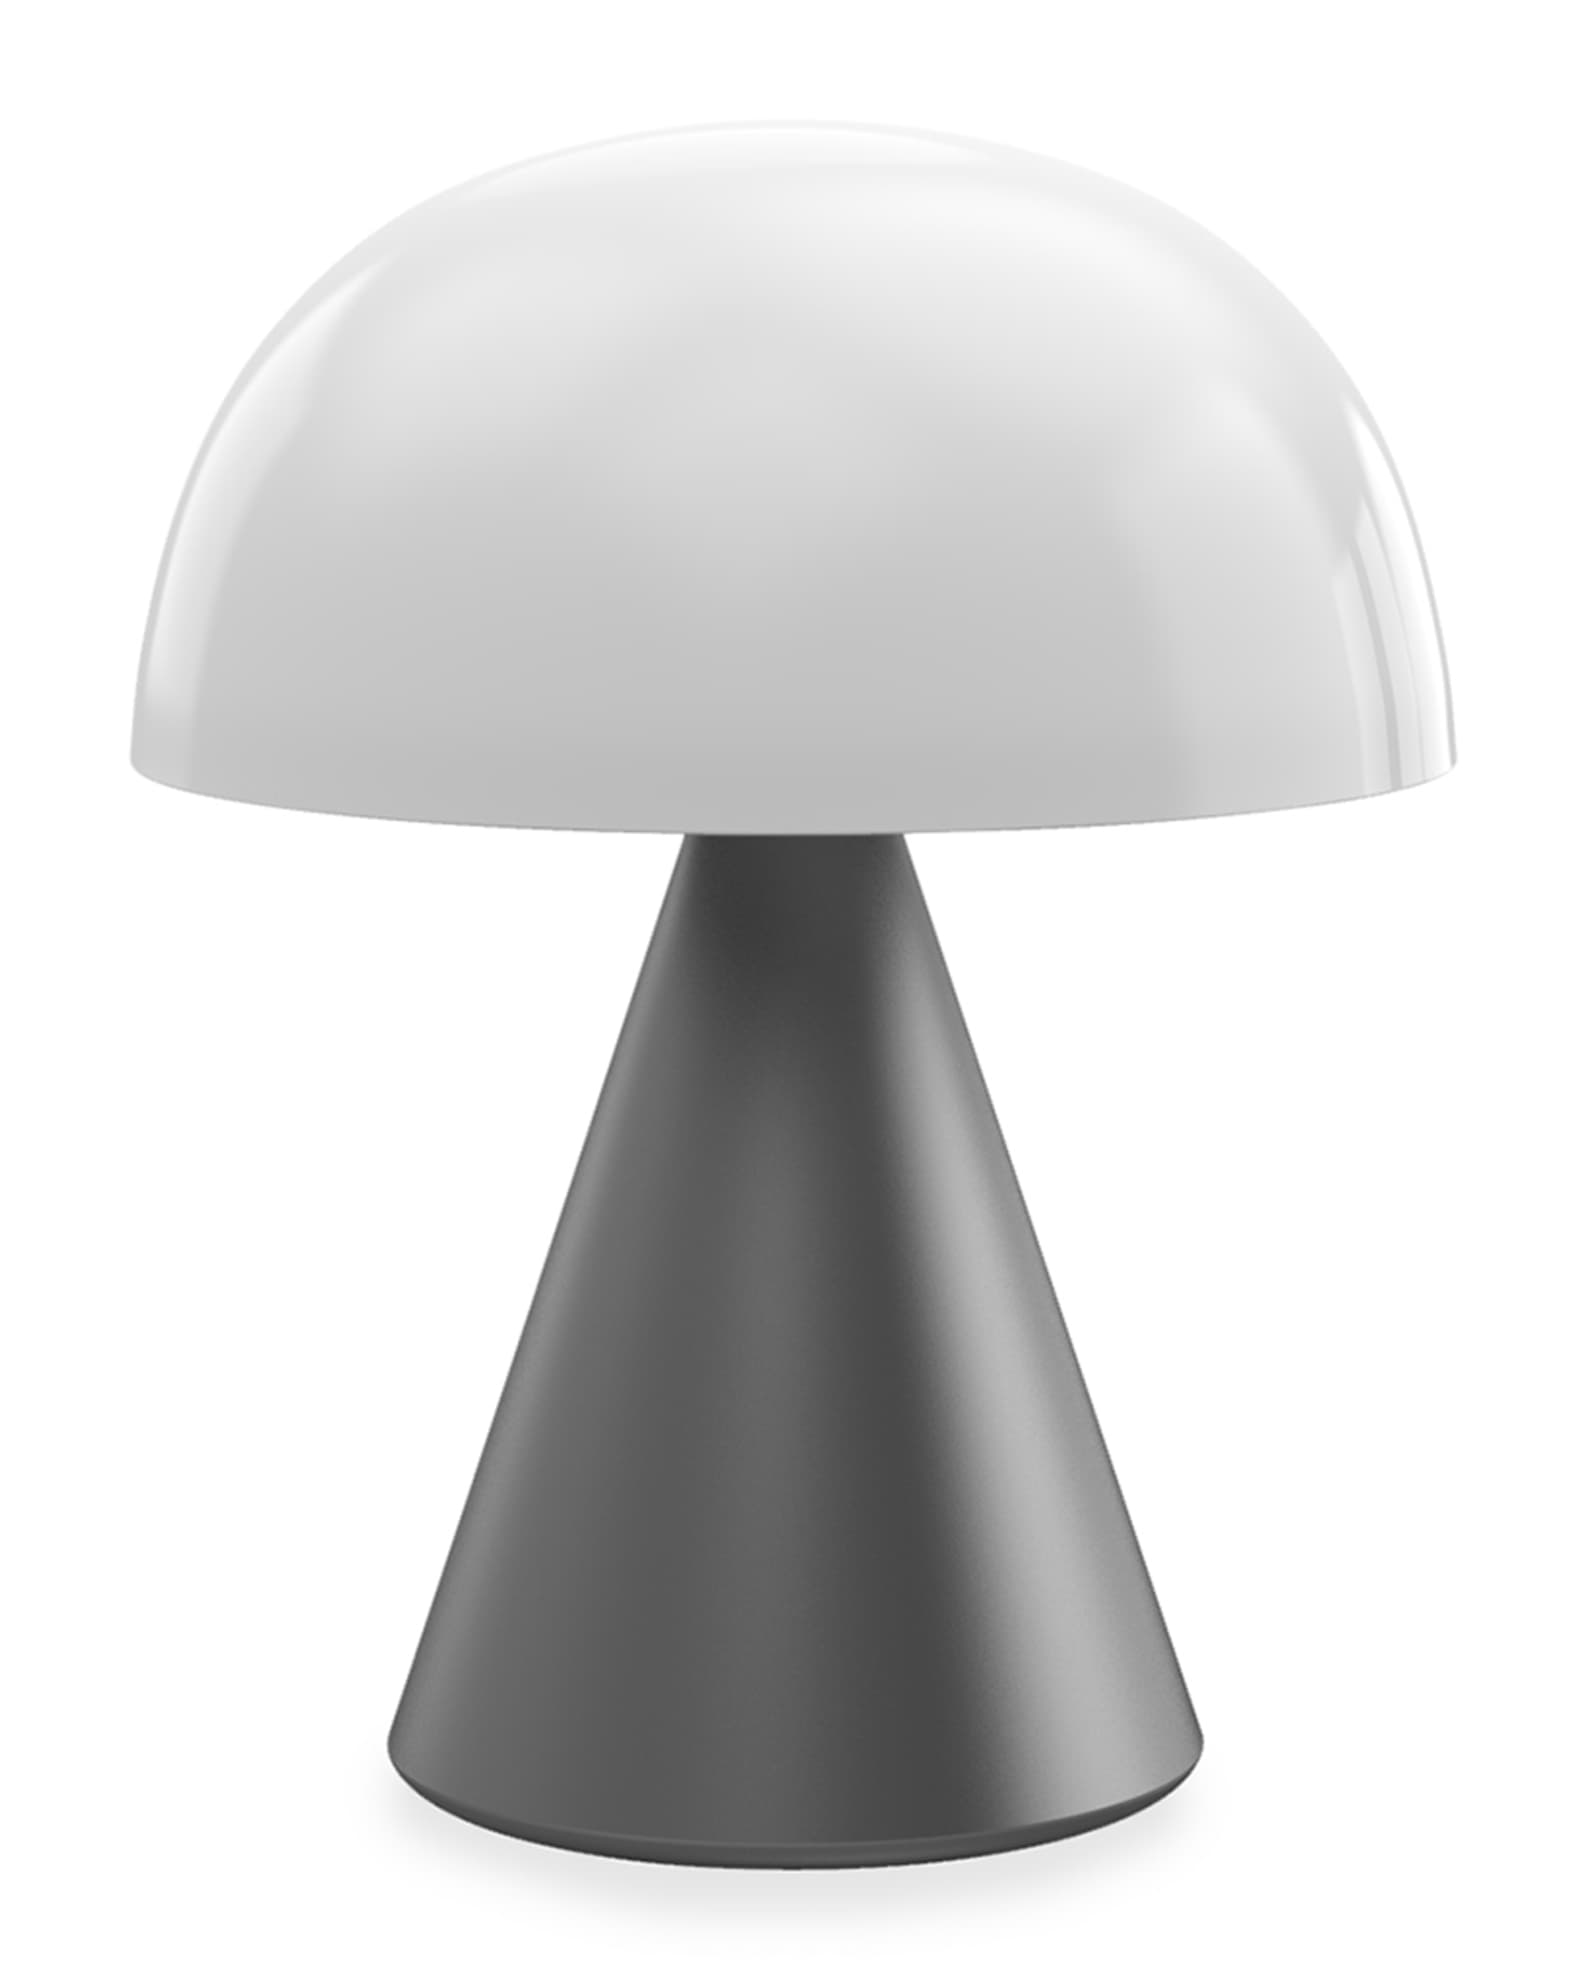 LEXON Mina L -  Large Portable LED Lamp | Neiman Marcus